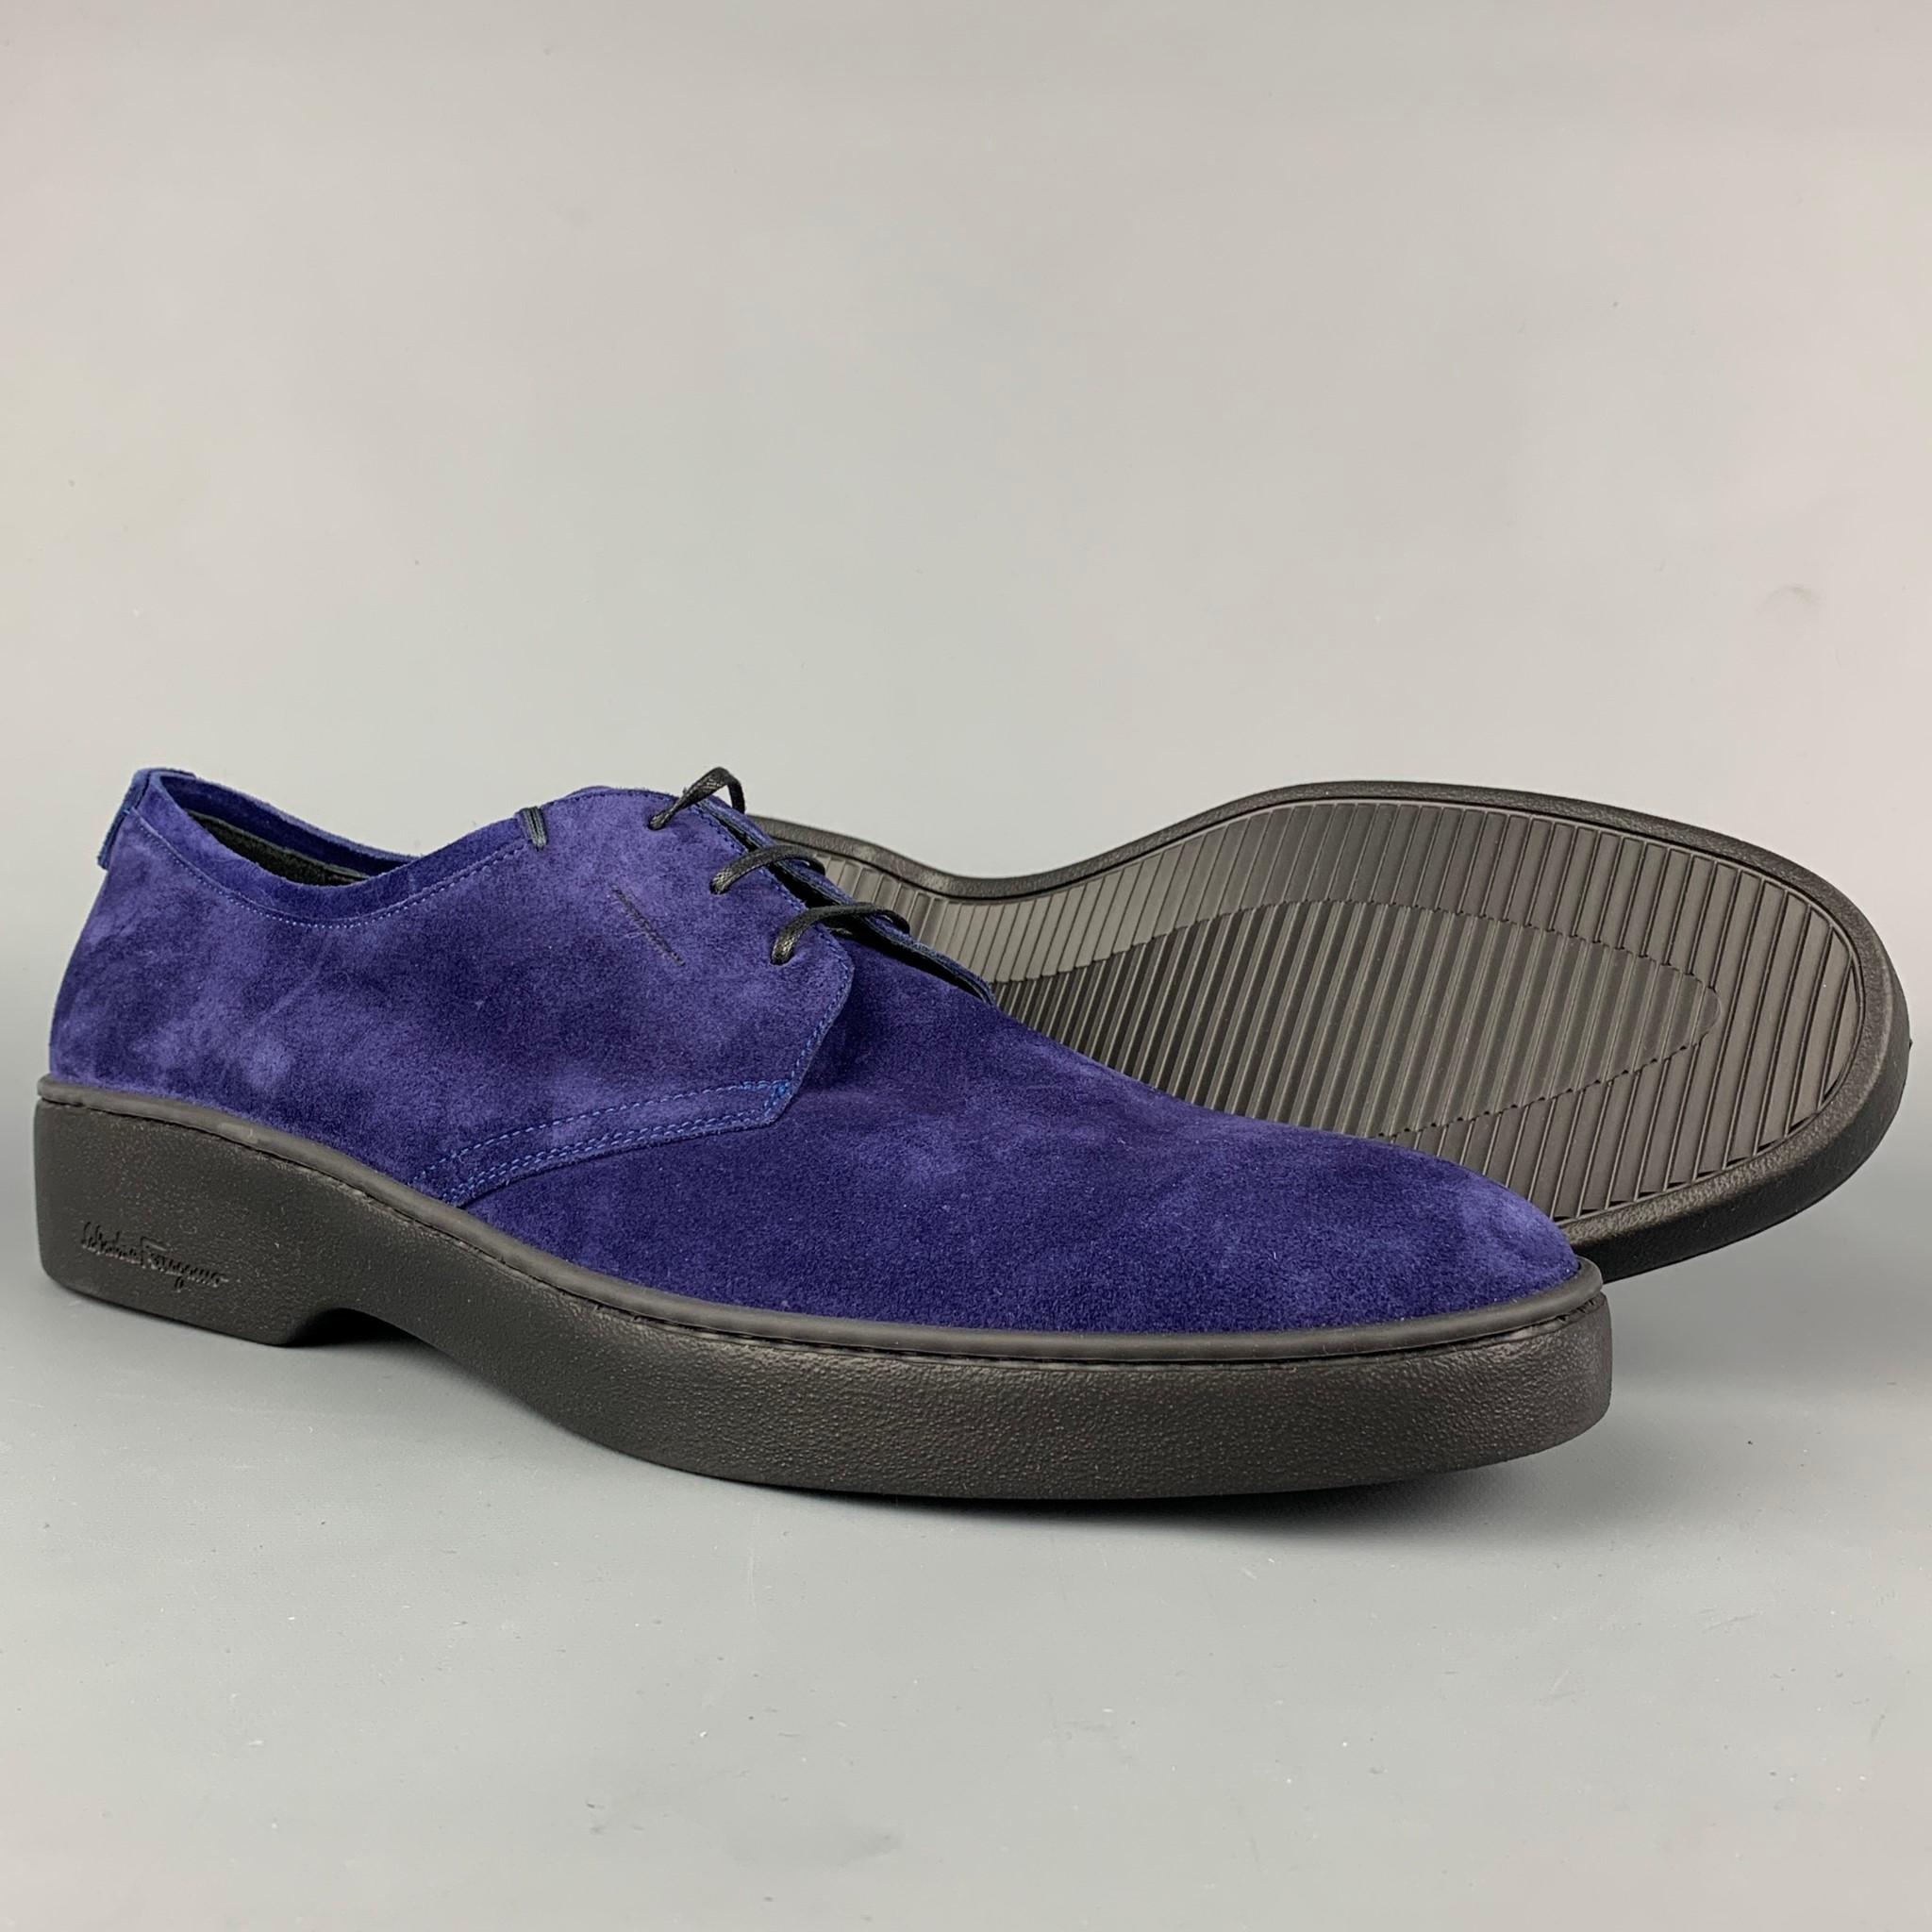 purple suede dress shoes